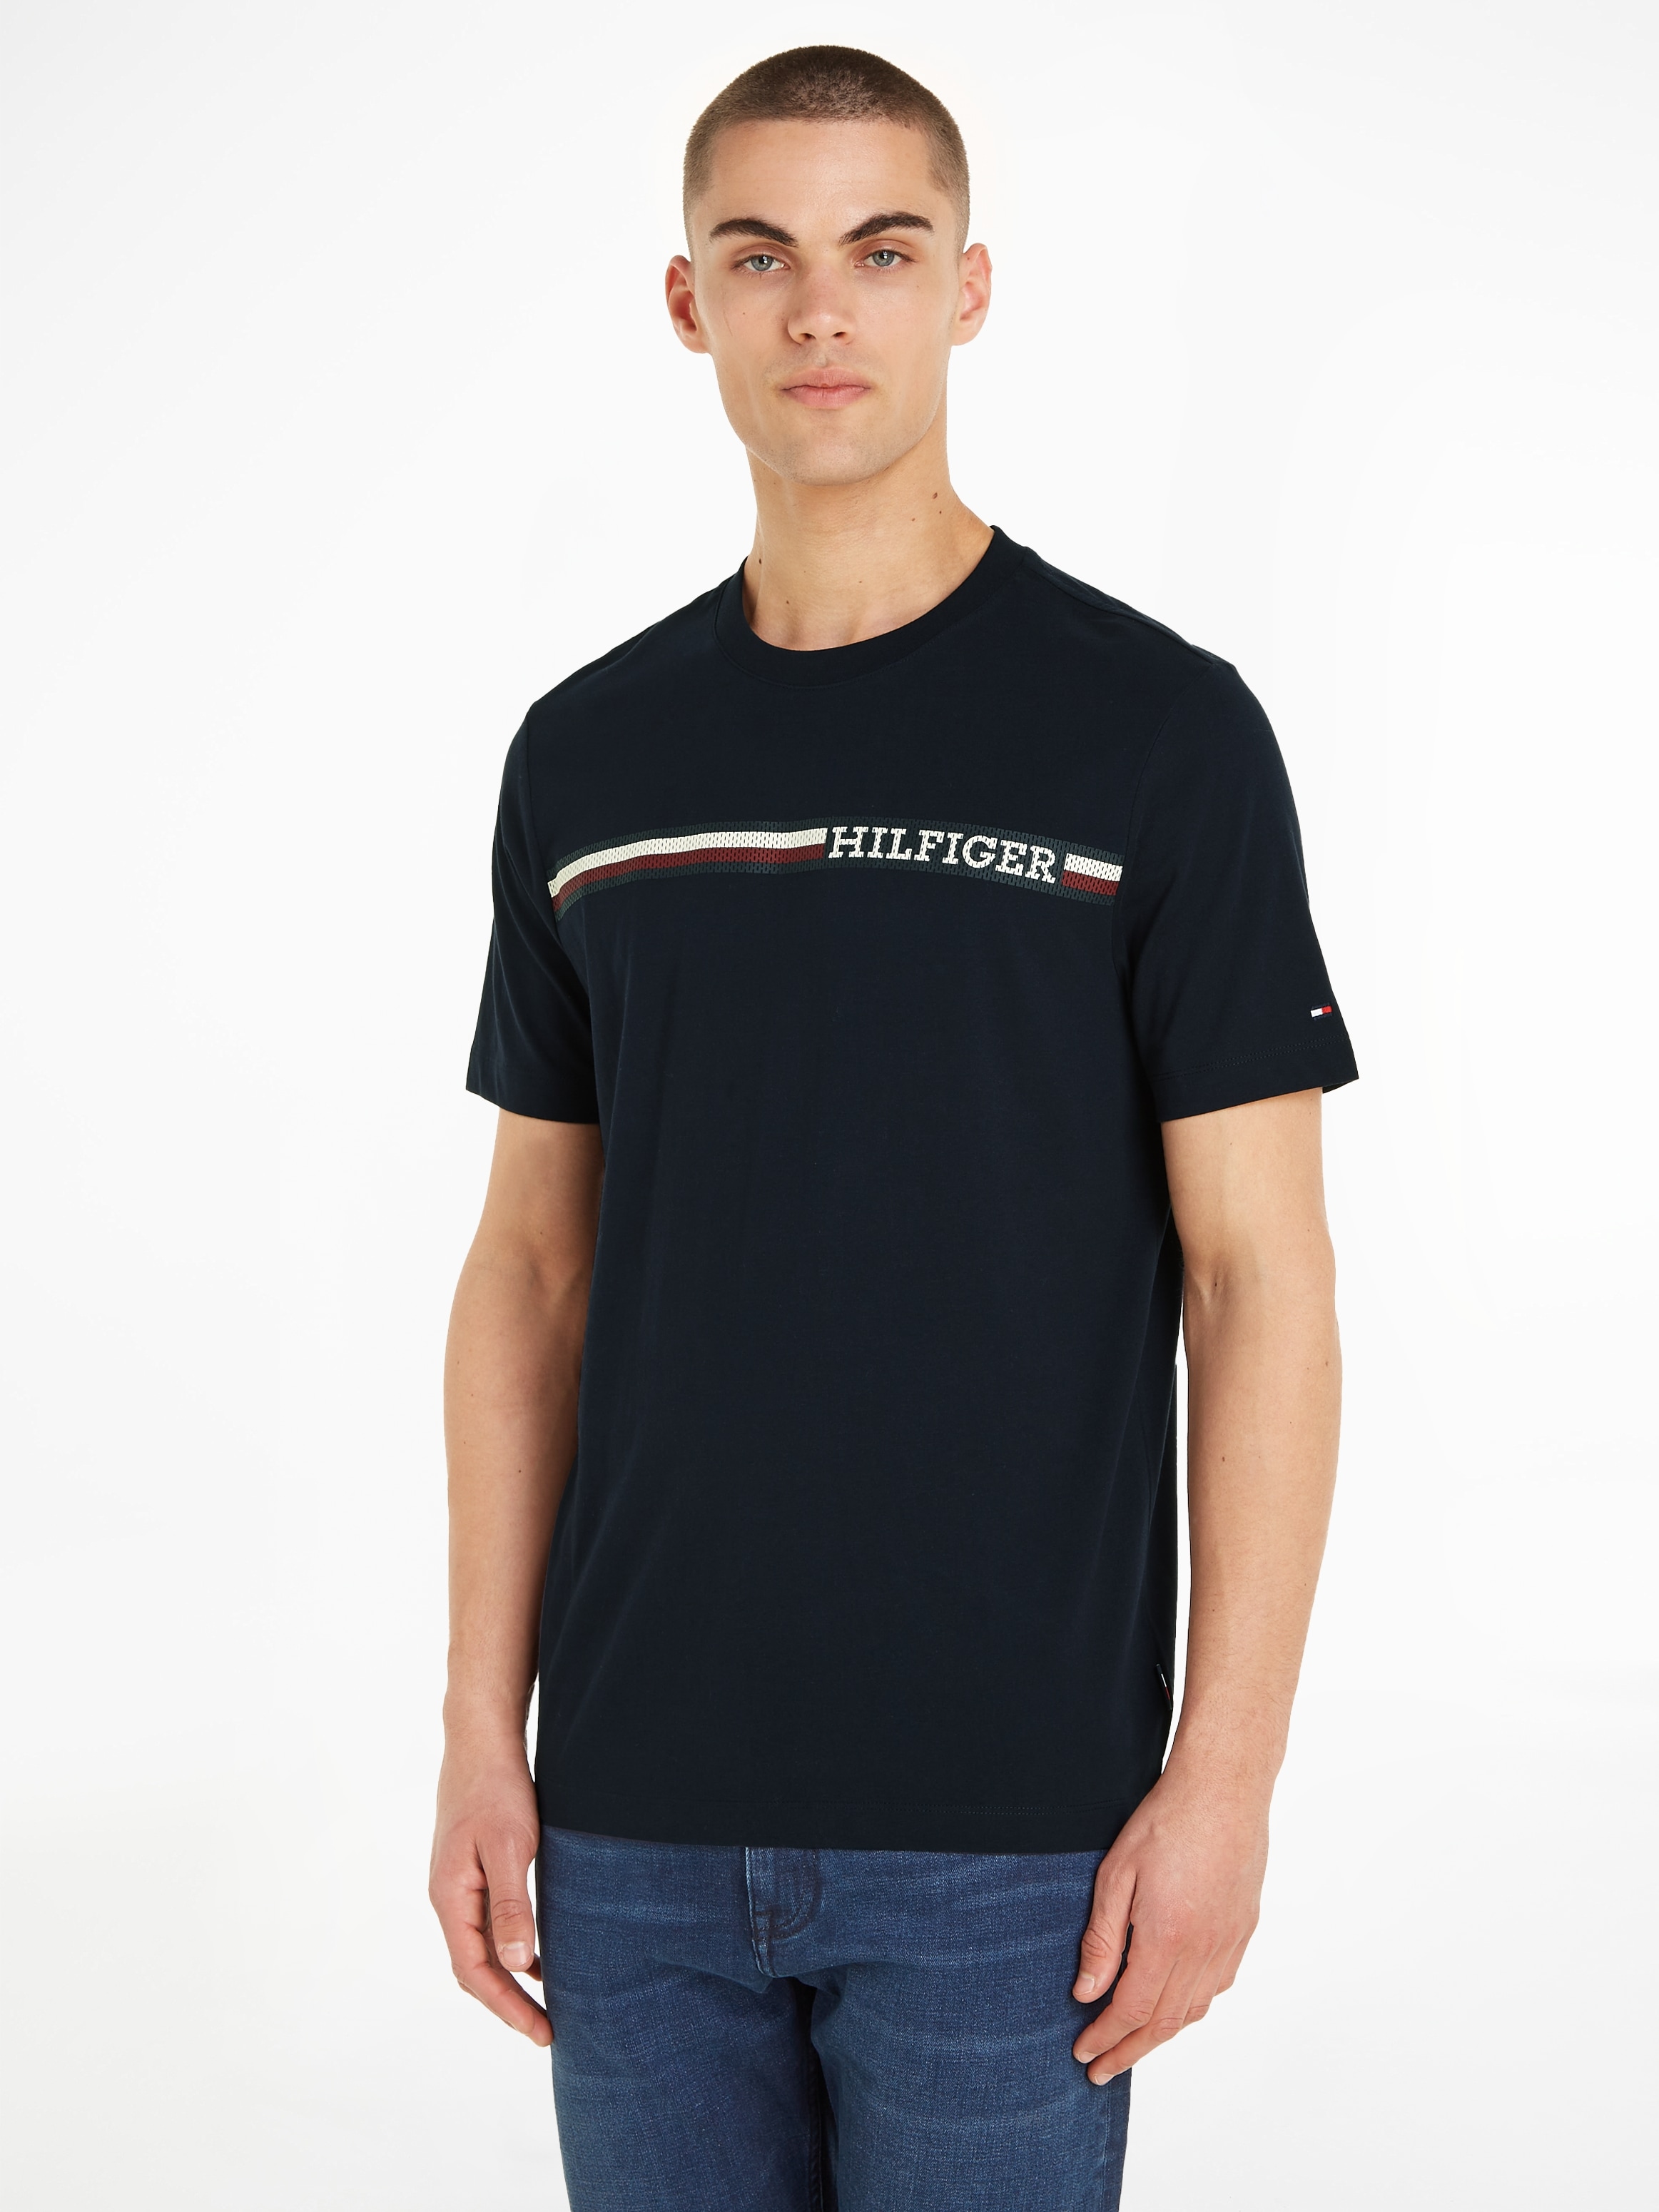 Tommy Hilfiger OTTO STRIPE CHEST shoppen »MONOTYPE online bei mit TEE«, T-Shirt Markenlogo